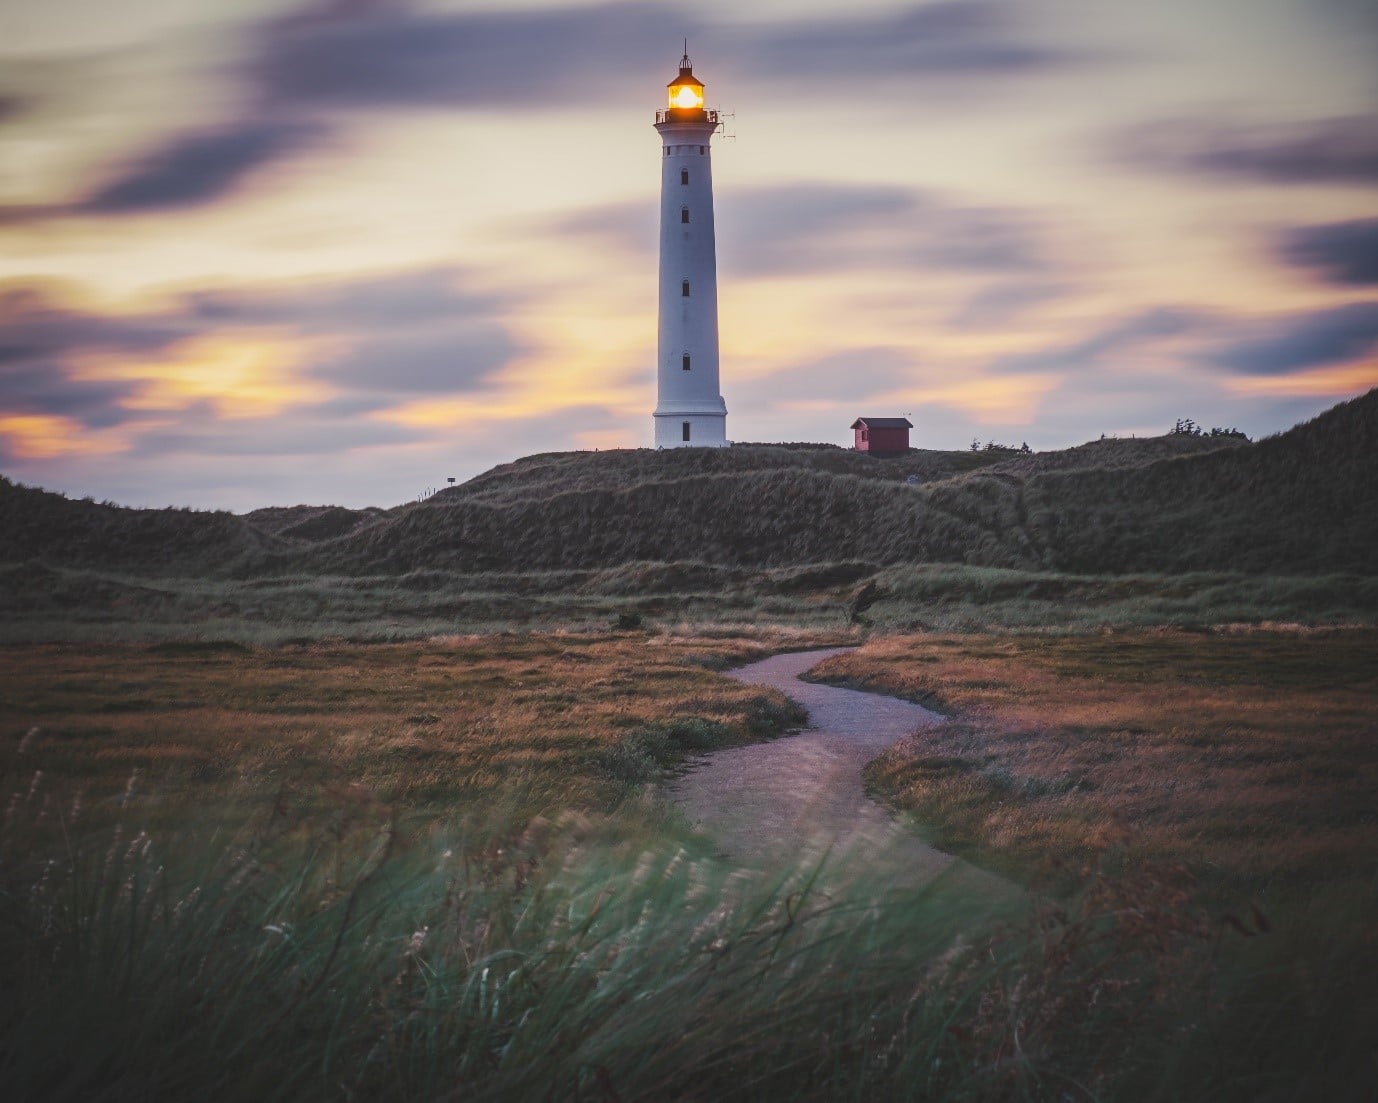 Leuchttrum Fyr in Dänemark - Dänemarks Westküste